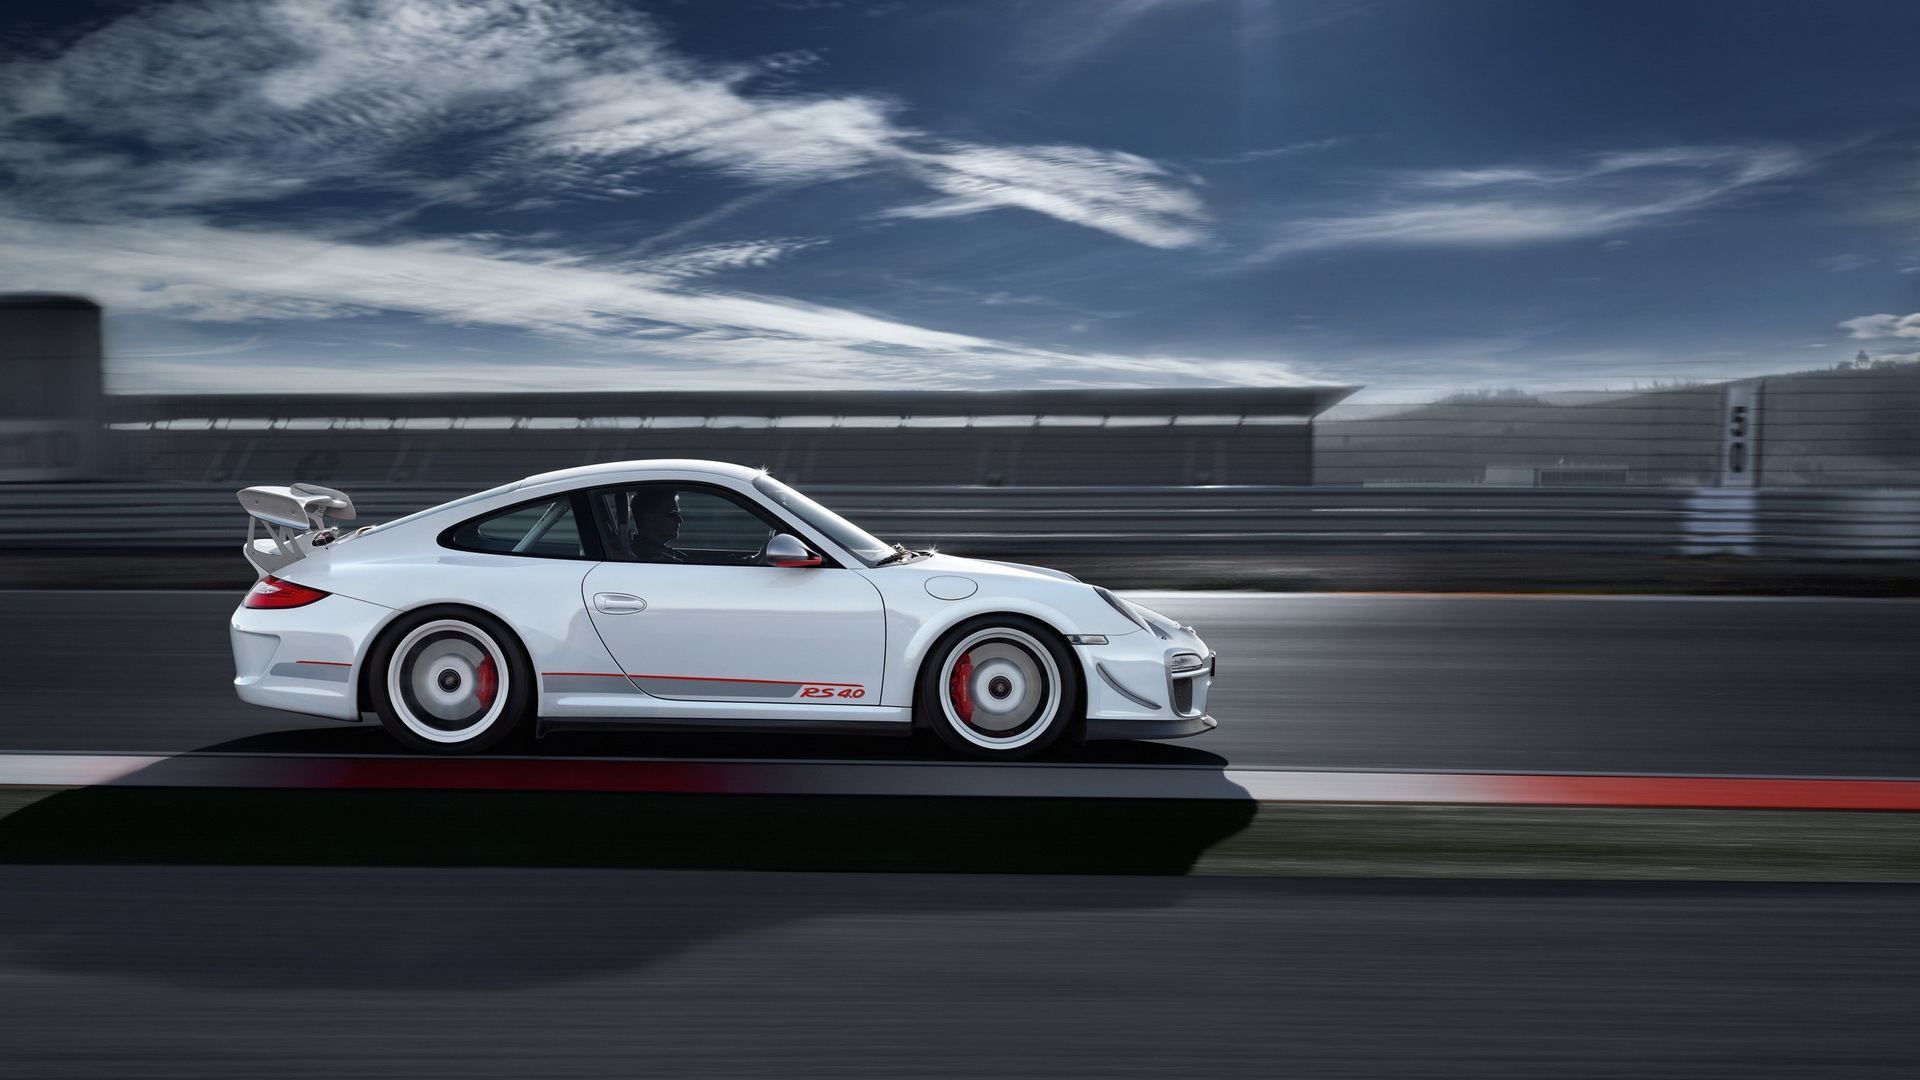 Porsche Gt3 Rs Wallpaper Image